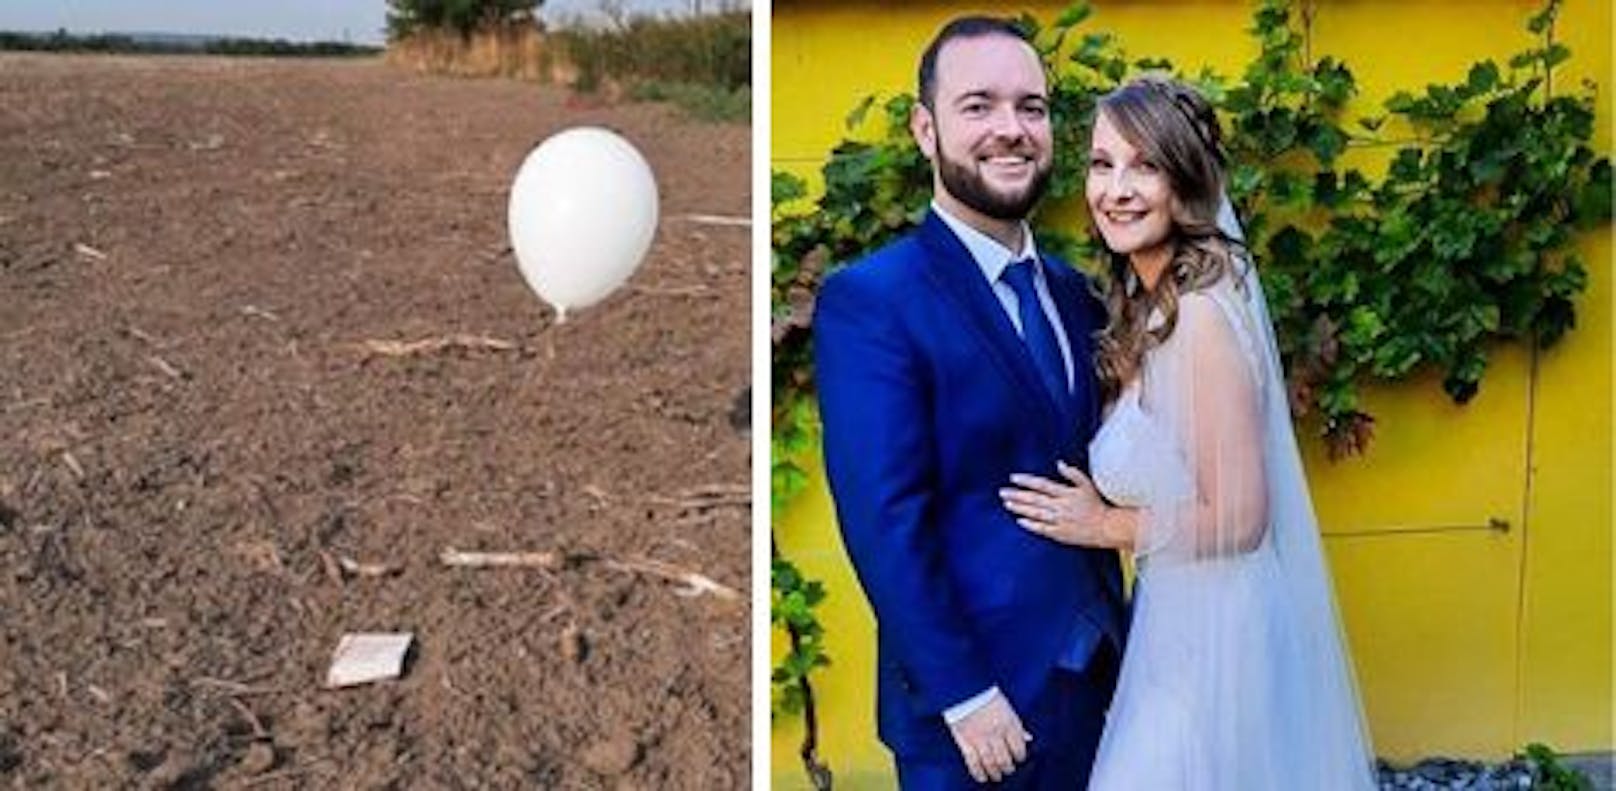 Pascal (29) und Sandra (26) - "ihr" Hochzeitsballon kam 250 Kilometer weit.